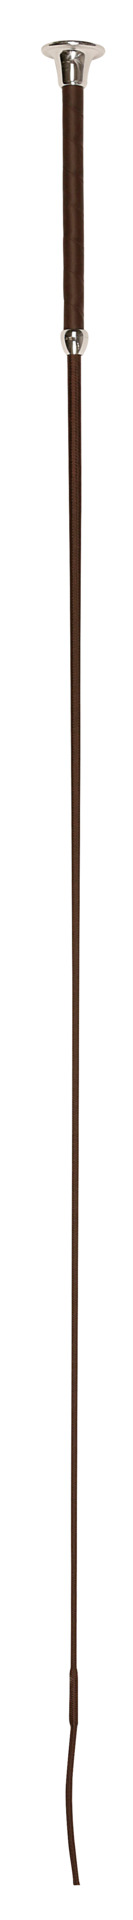 Kerbl Dressurgerte 110cm